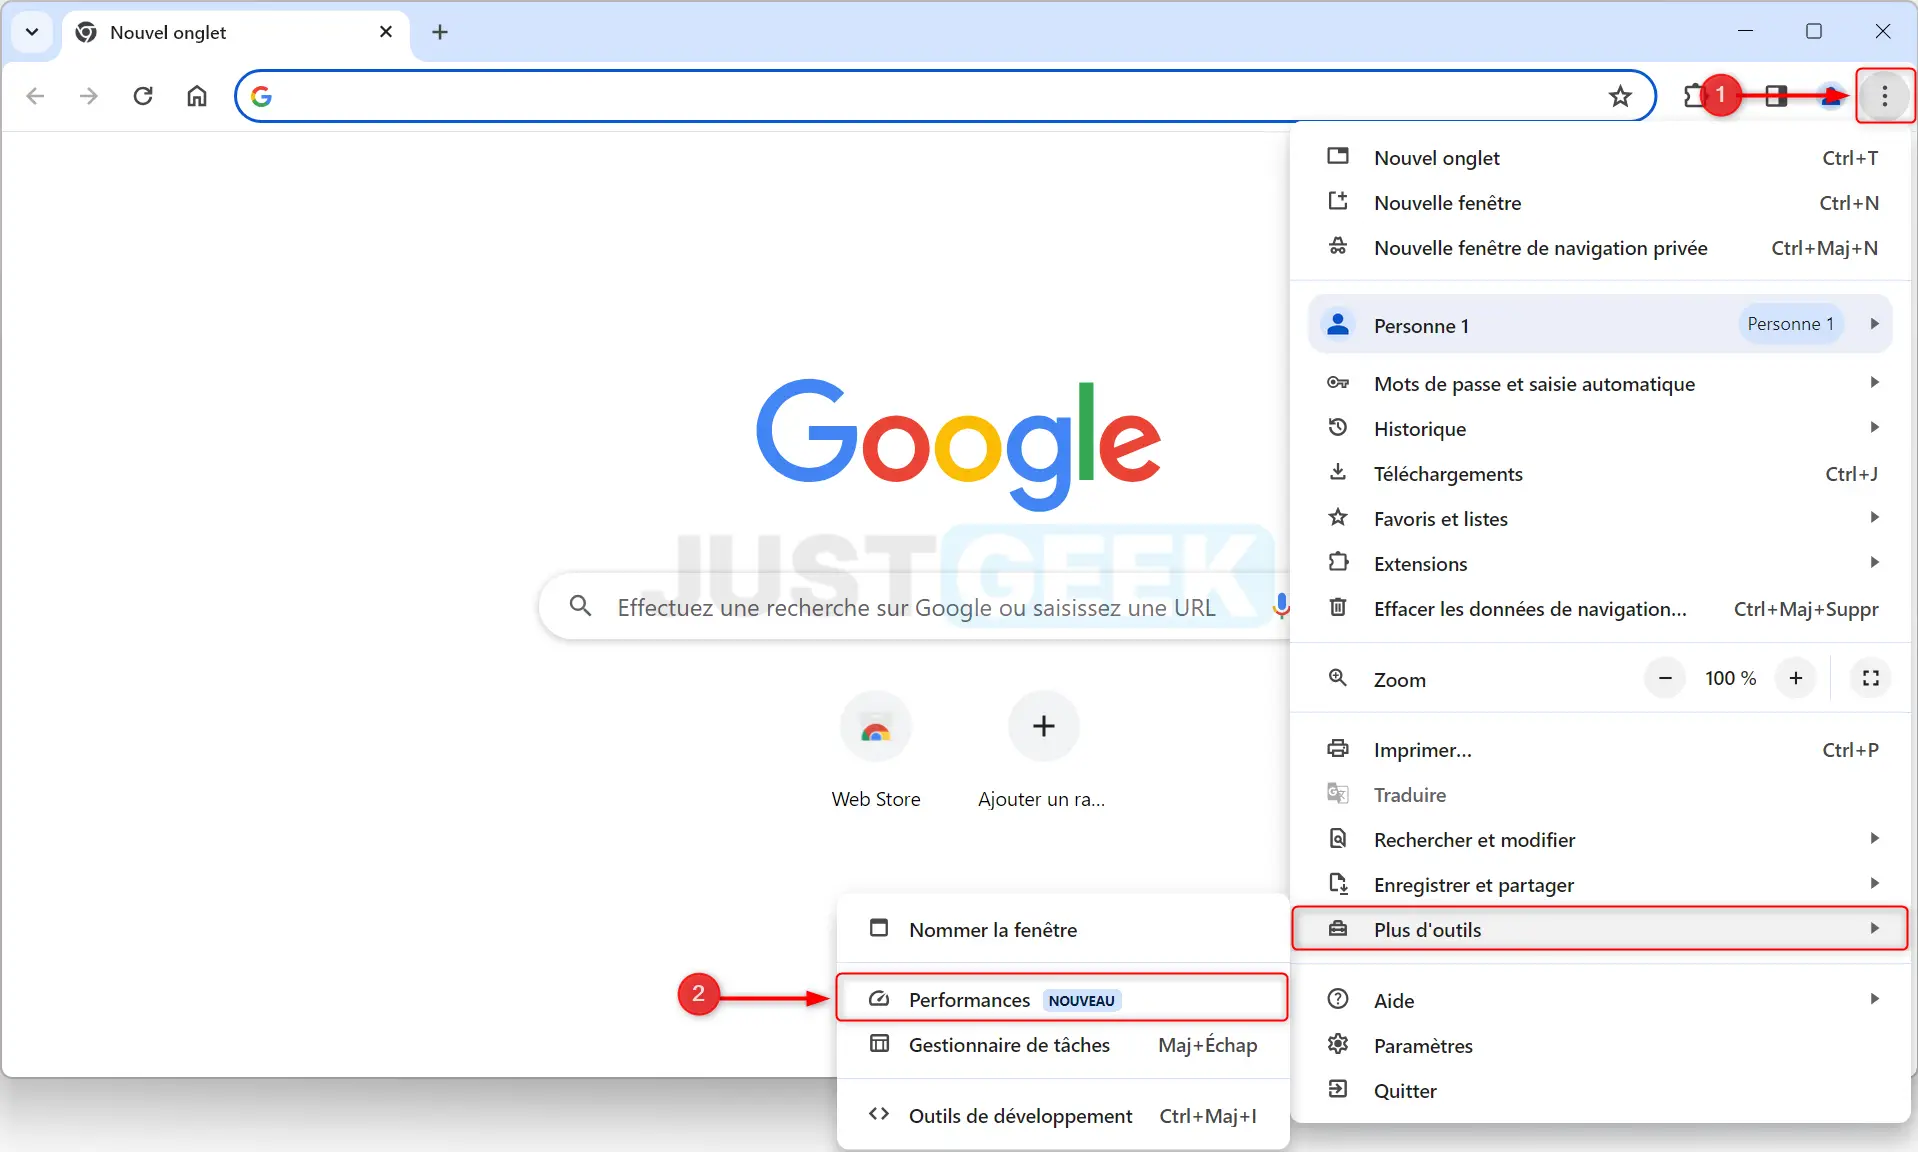 Capture d'écran du menu de Google Chrome, le sous-menu "Plus d'outils" dans Google Chrome, avec une flèche indiquant l'option "Performances" à sélectionner.